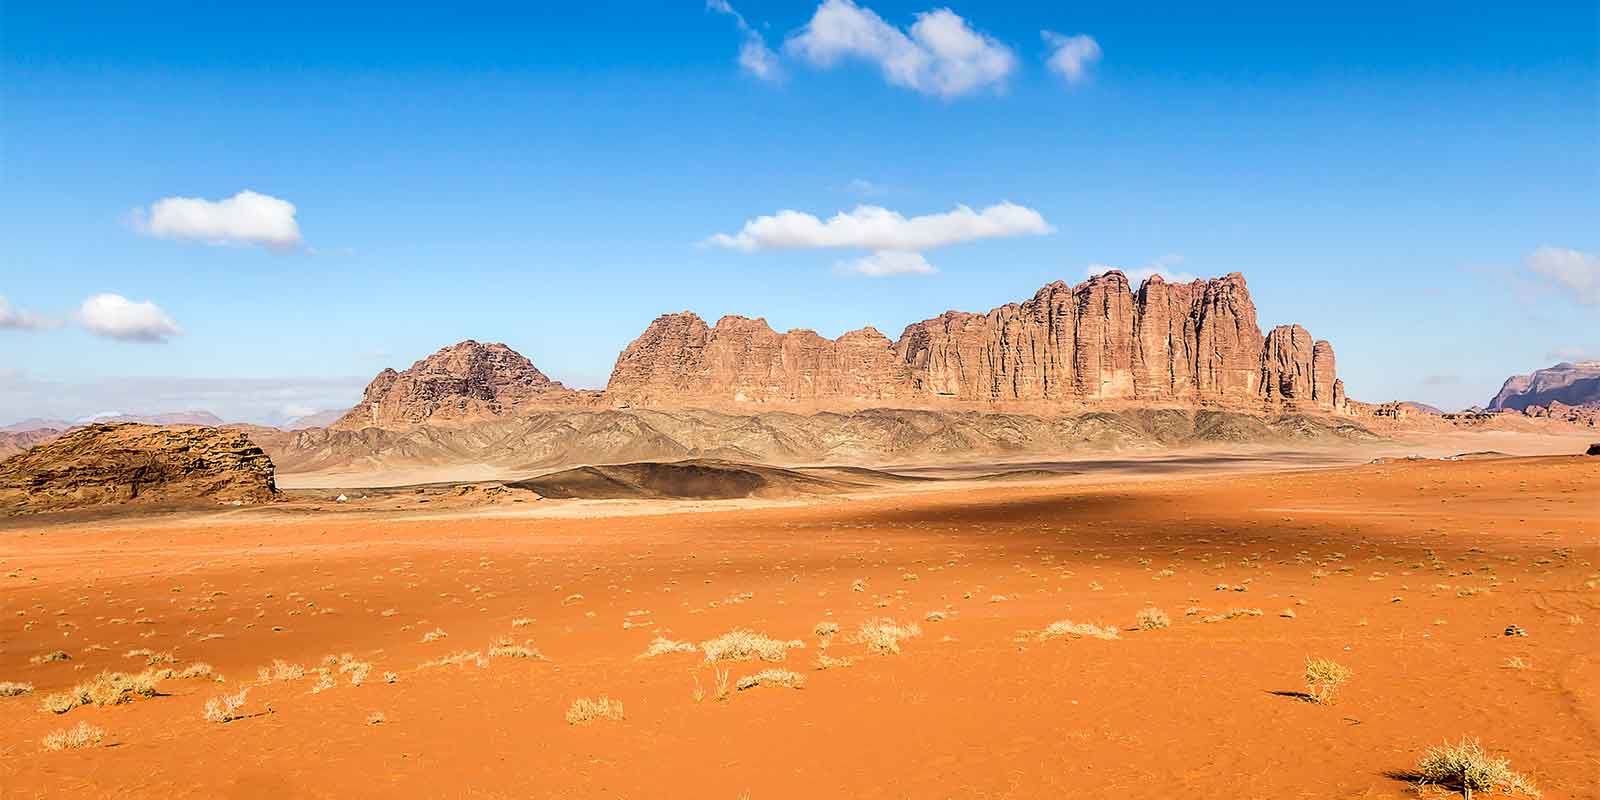 The desert of Wadi Rum in Jordan